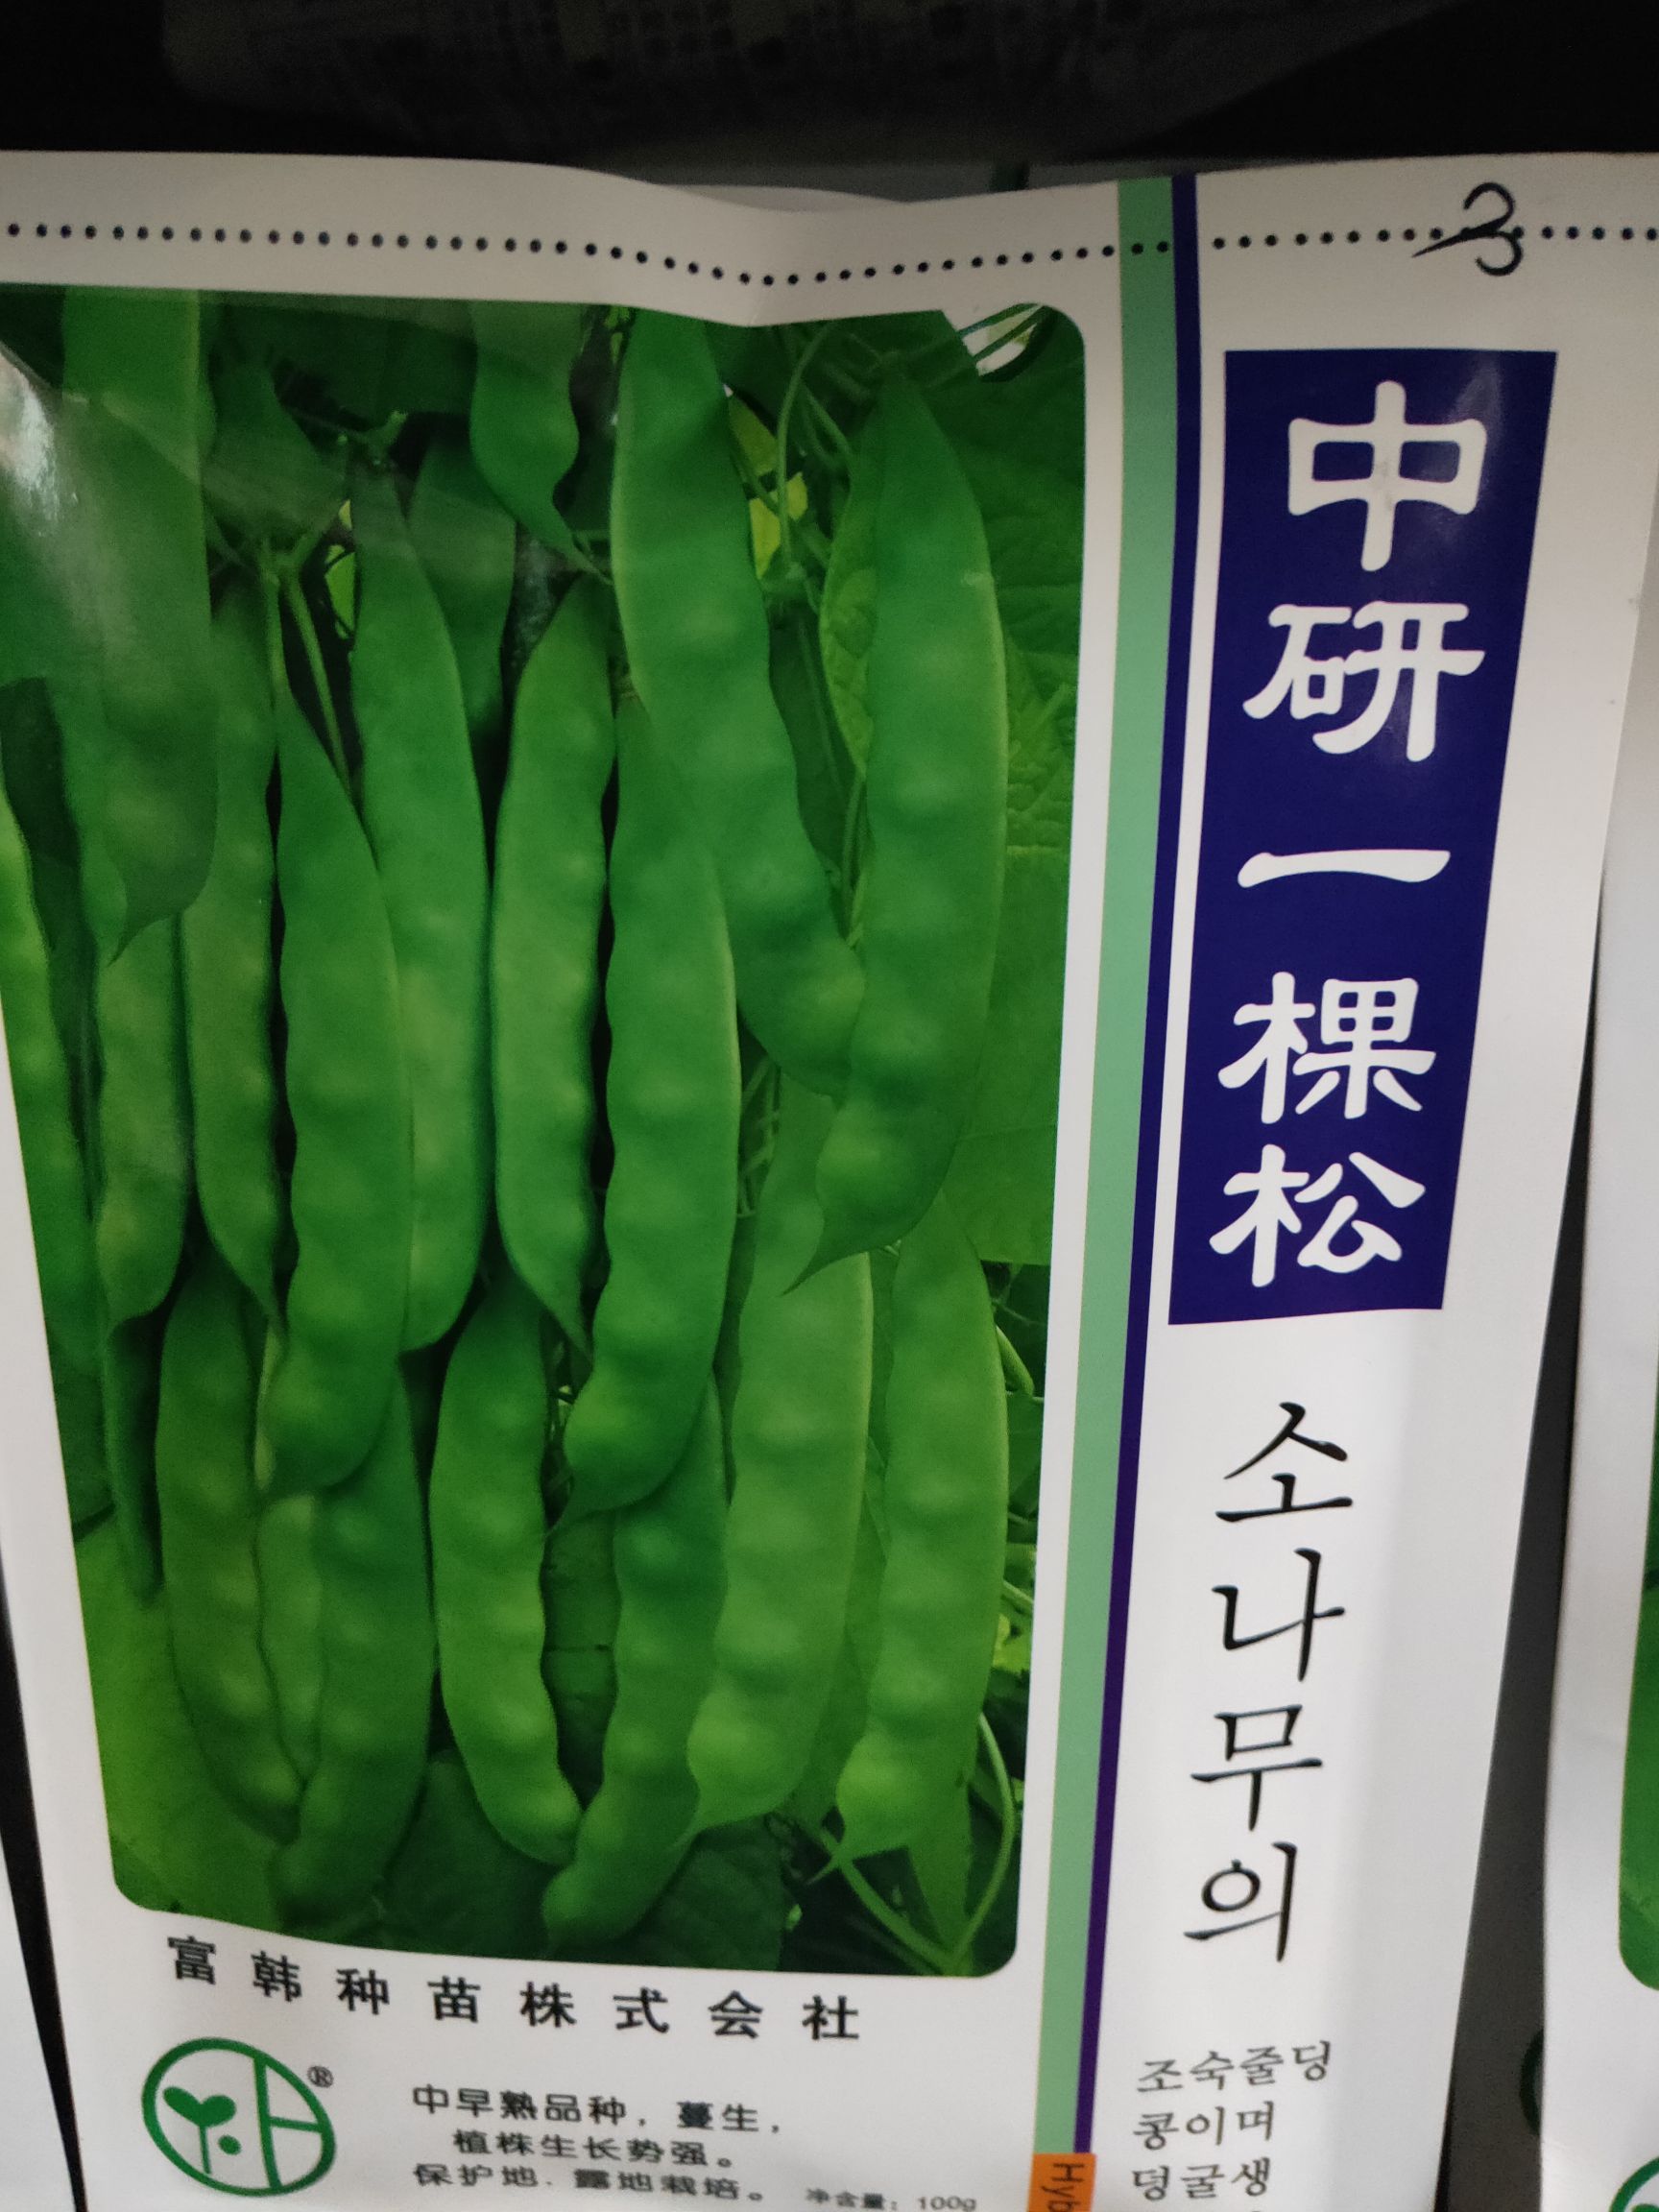 [豆角种子批发] 豆角种子价格25元/袋 - 惠农网